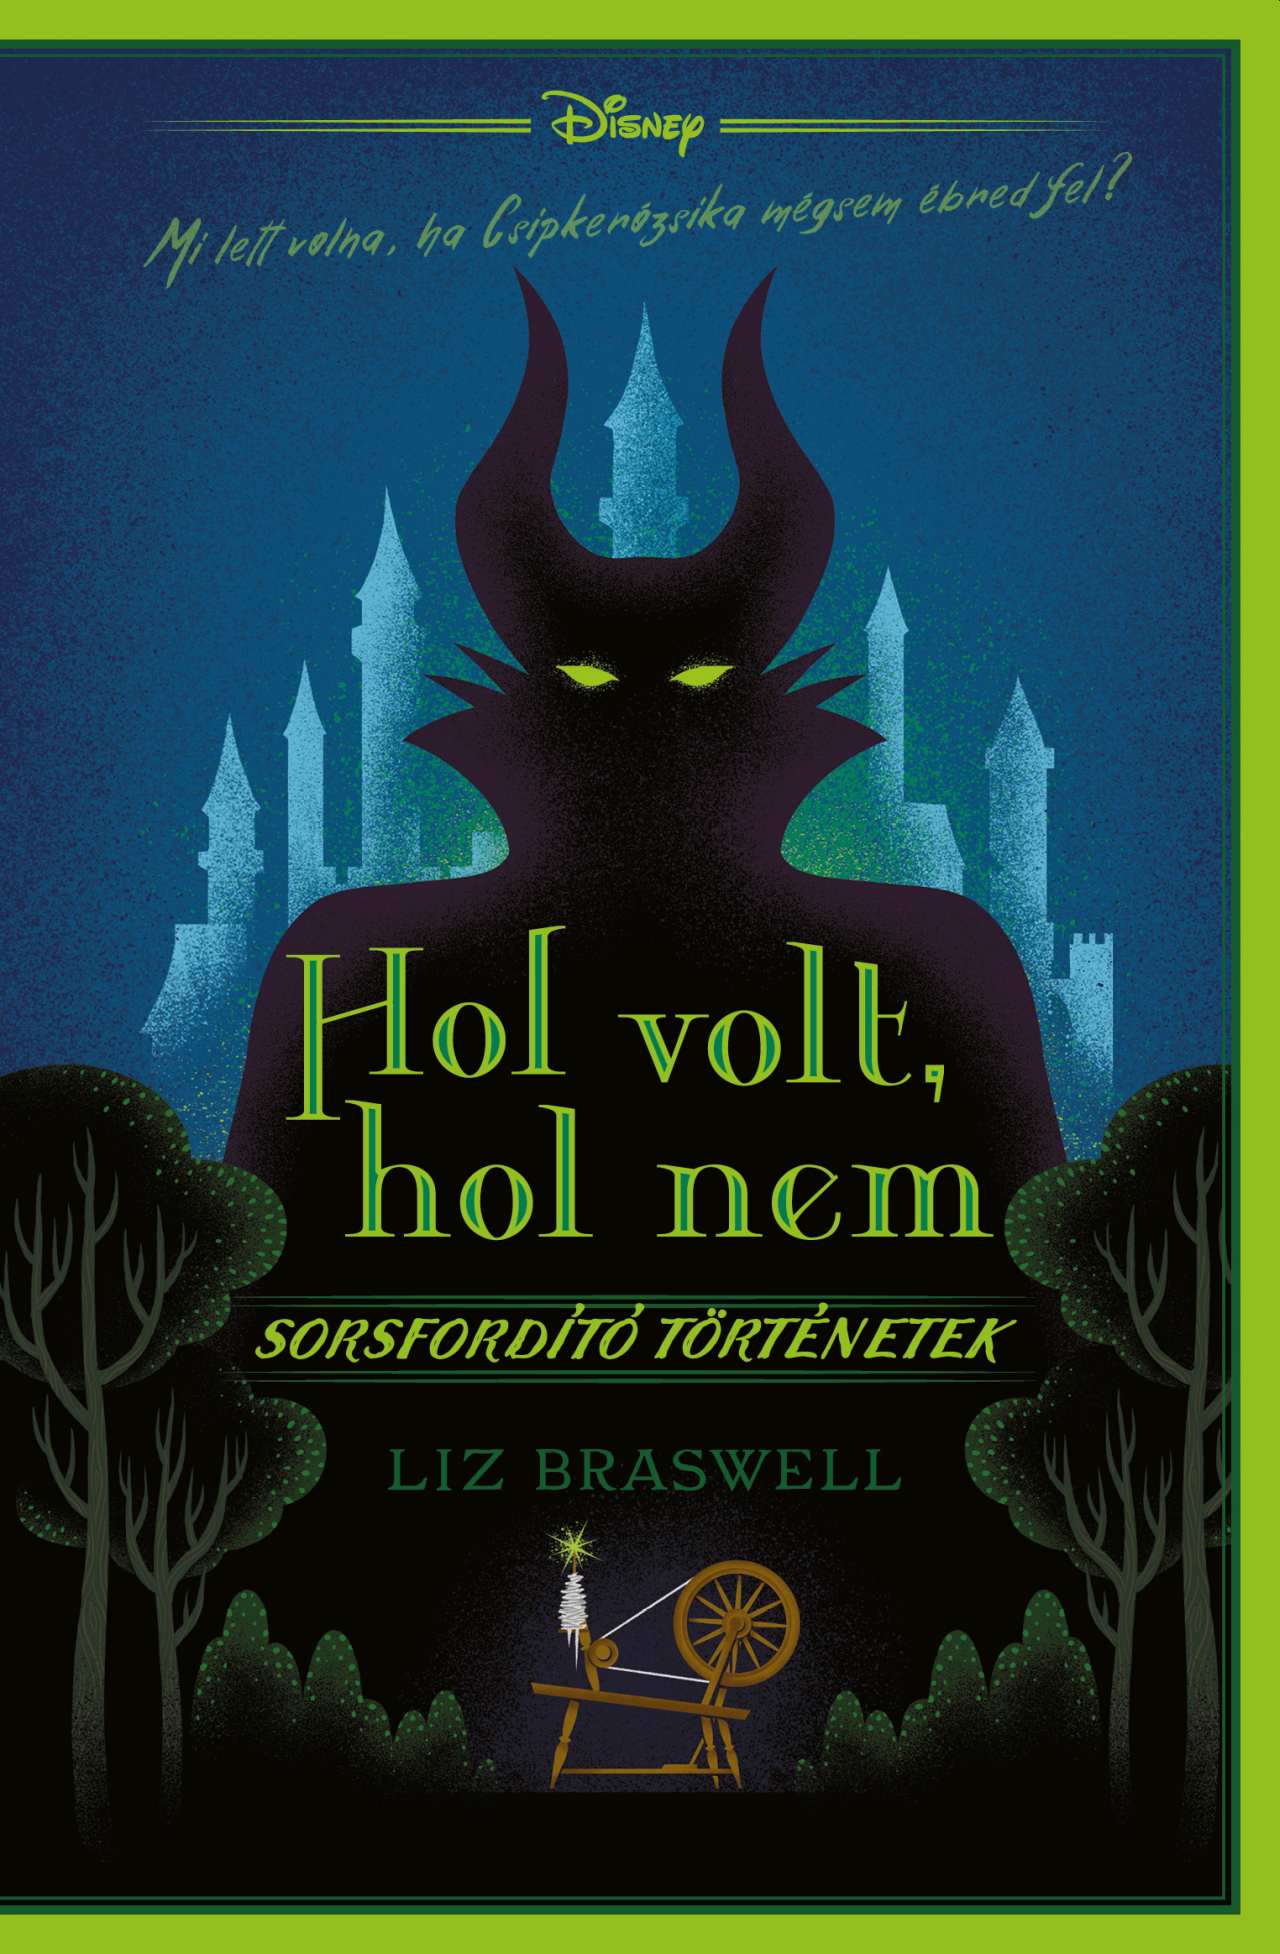 Liz Braswell - Sorsfordító történetek - Hol volt, hol nem - Disney